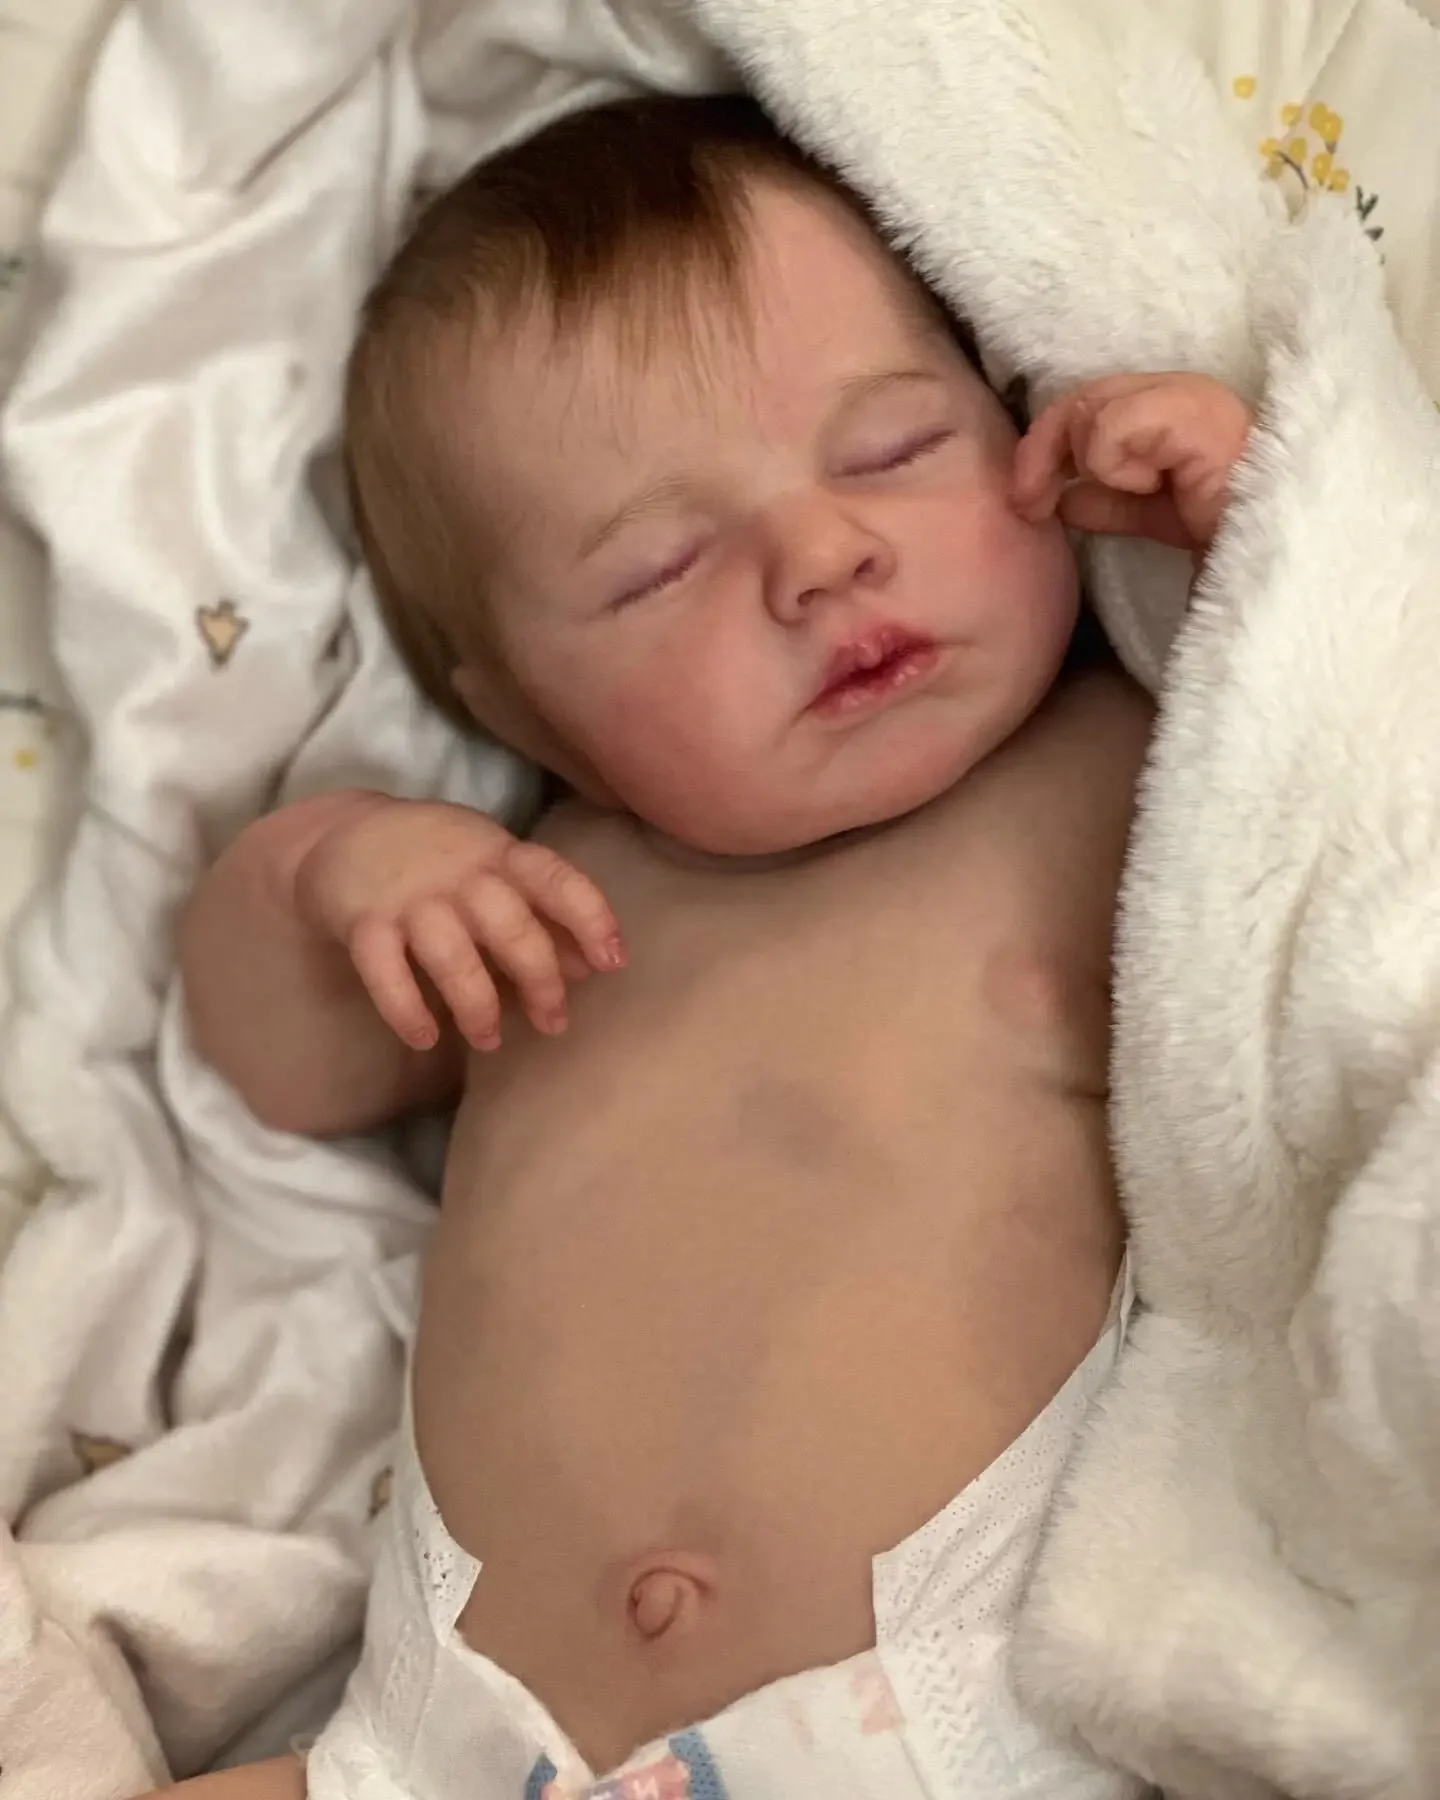 

Кукла NPK новорожденная, 49 см, Спящая кукла-младенец Loulou, Реалистичная объемная кожа с видимыми венами, кукла ручной работы высокого качества